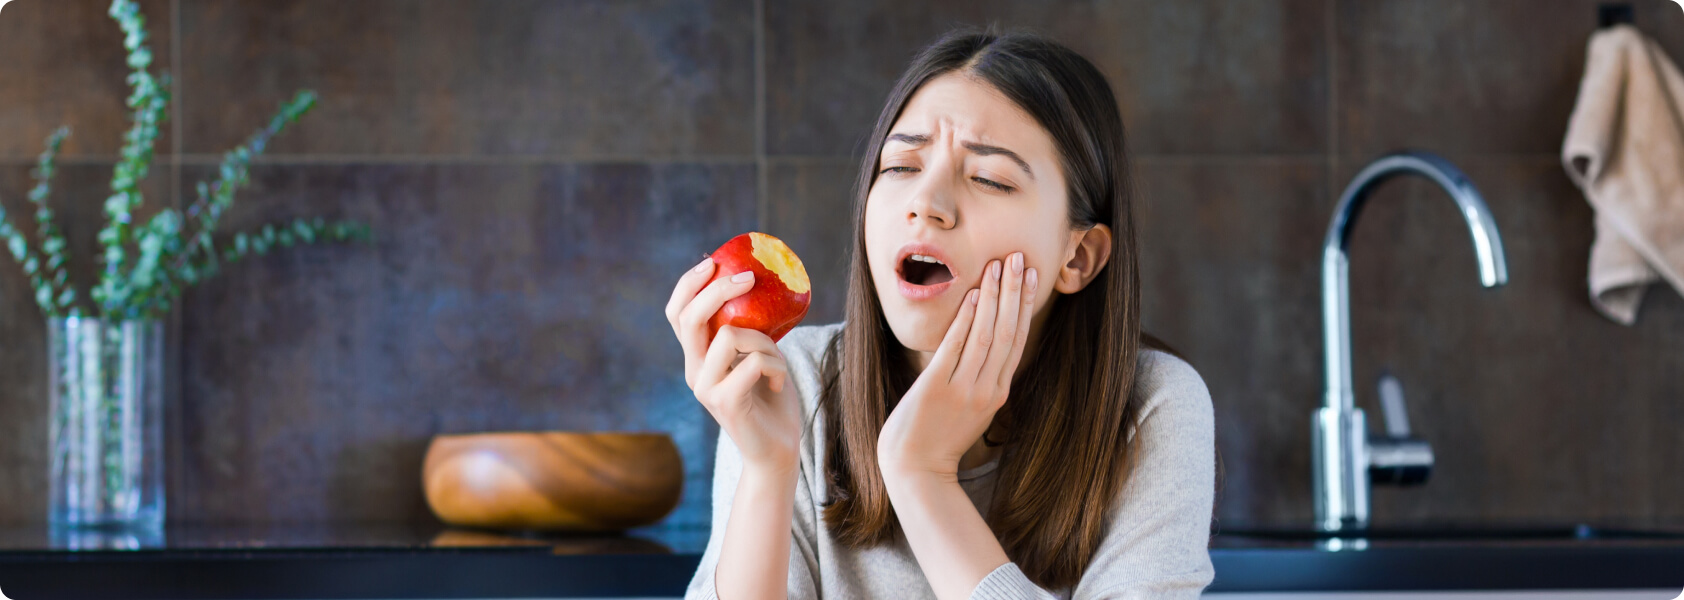 Zahnfreilegung - Die Folgen solcher Störungen sind Zahnretentionen,